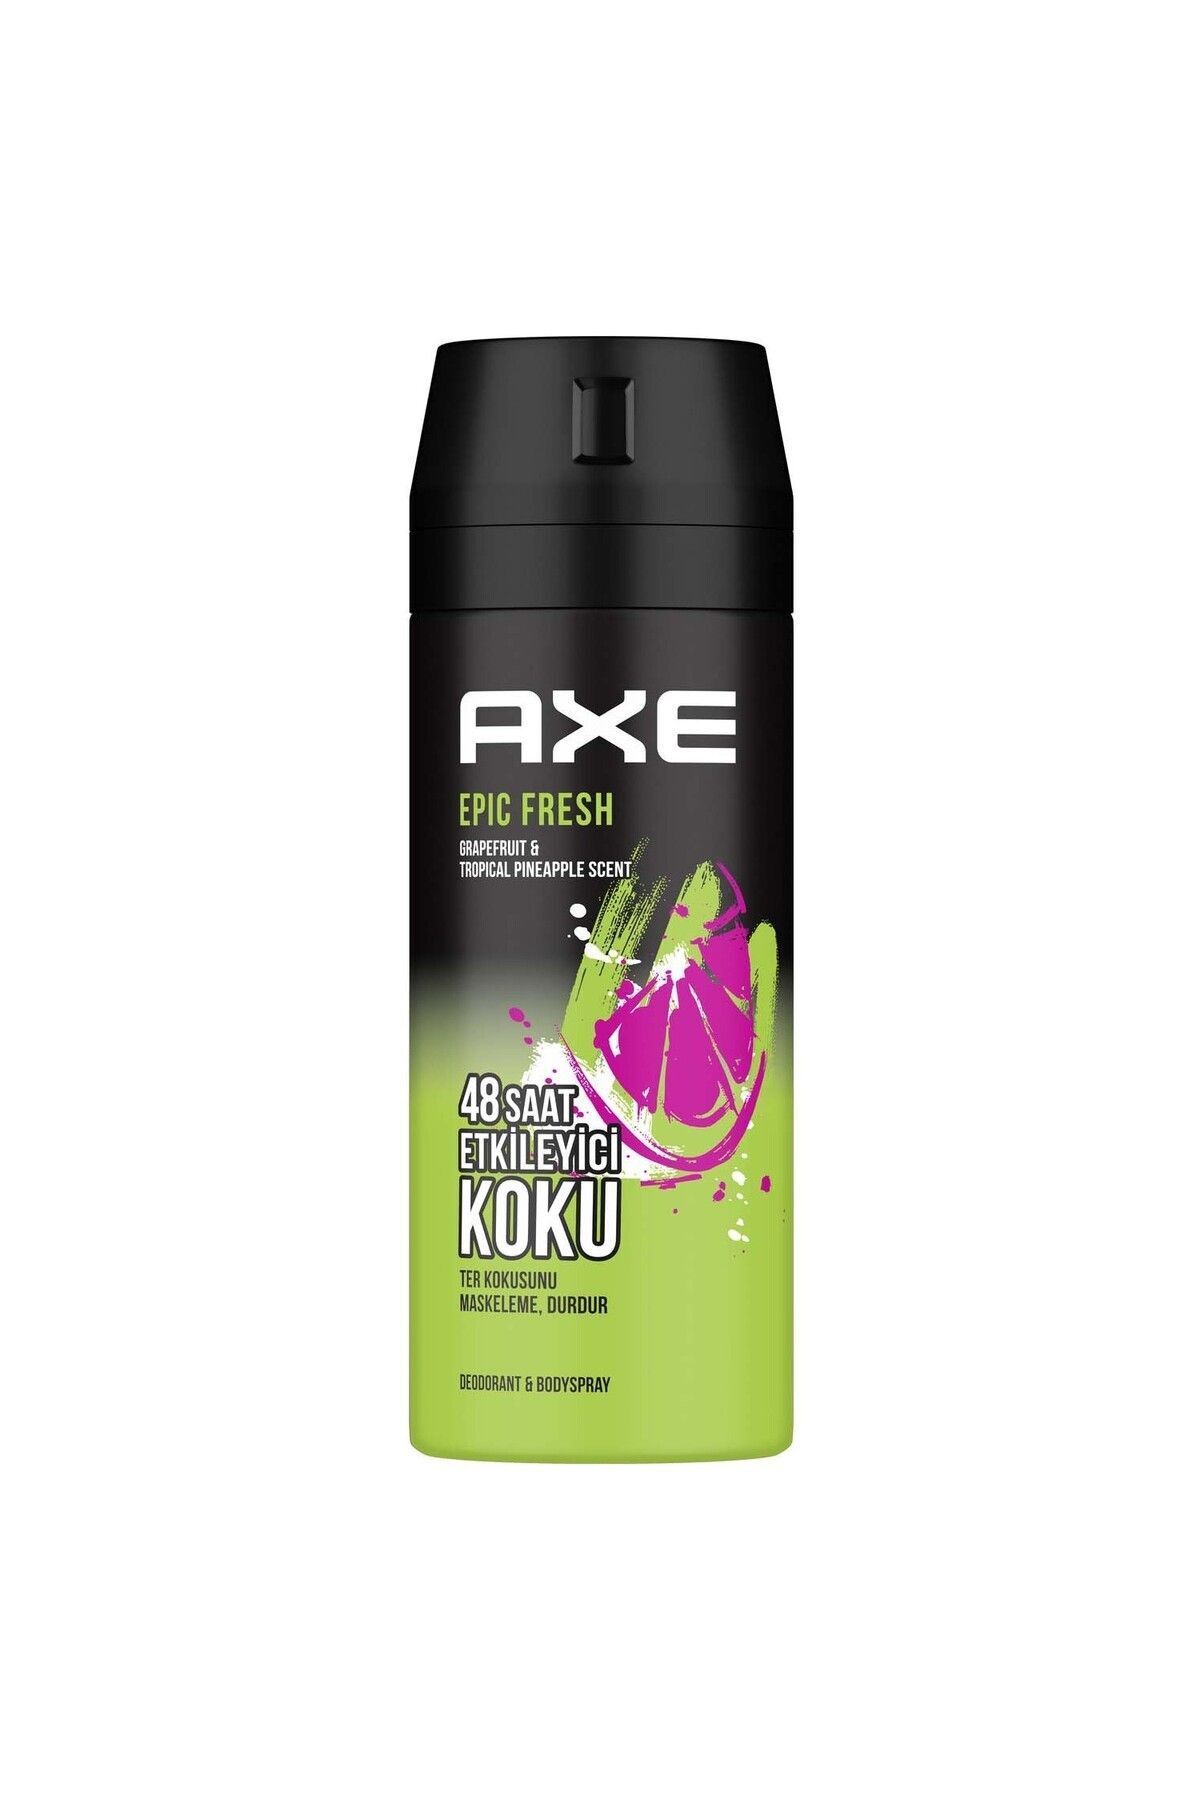 Axe Erkek Deodorant & Bodyspray Epic Fresh 48 Saat Etkileyici Koku 150 ML